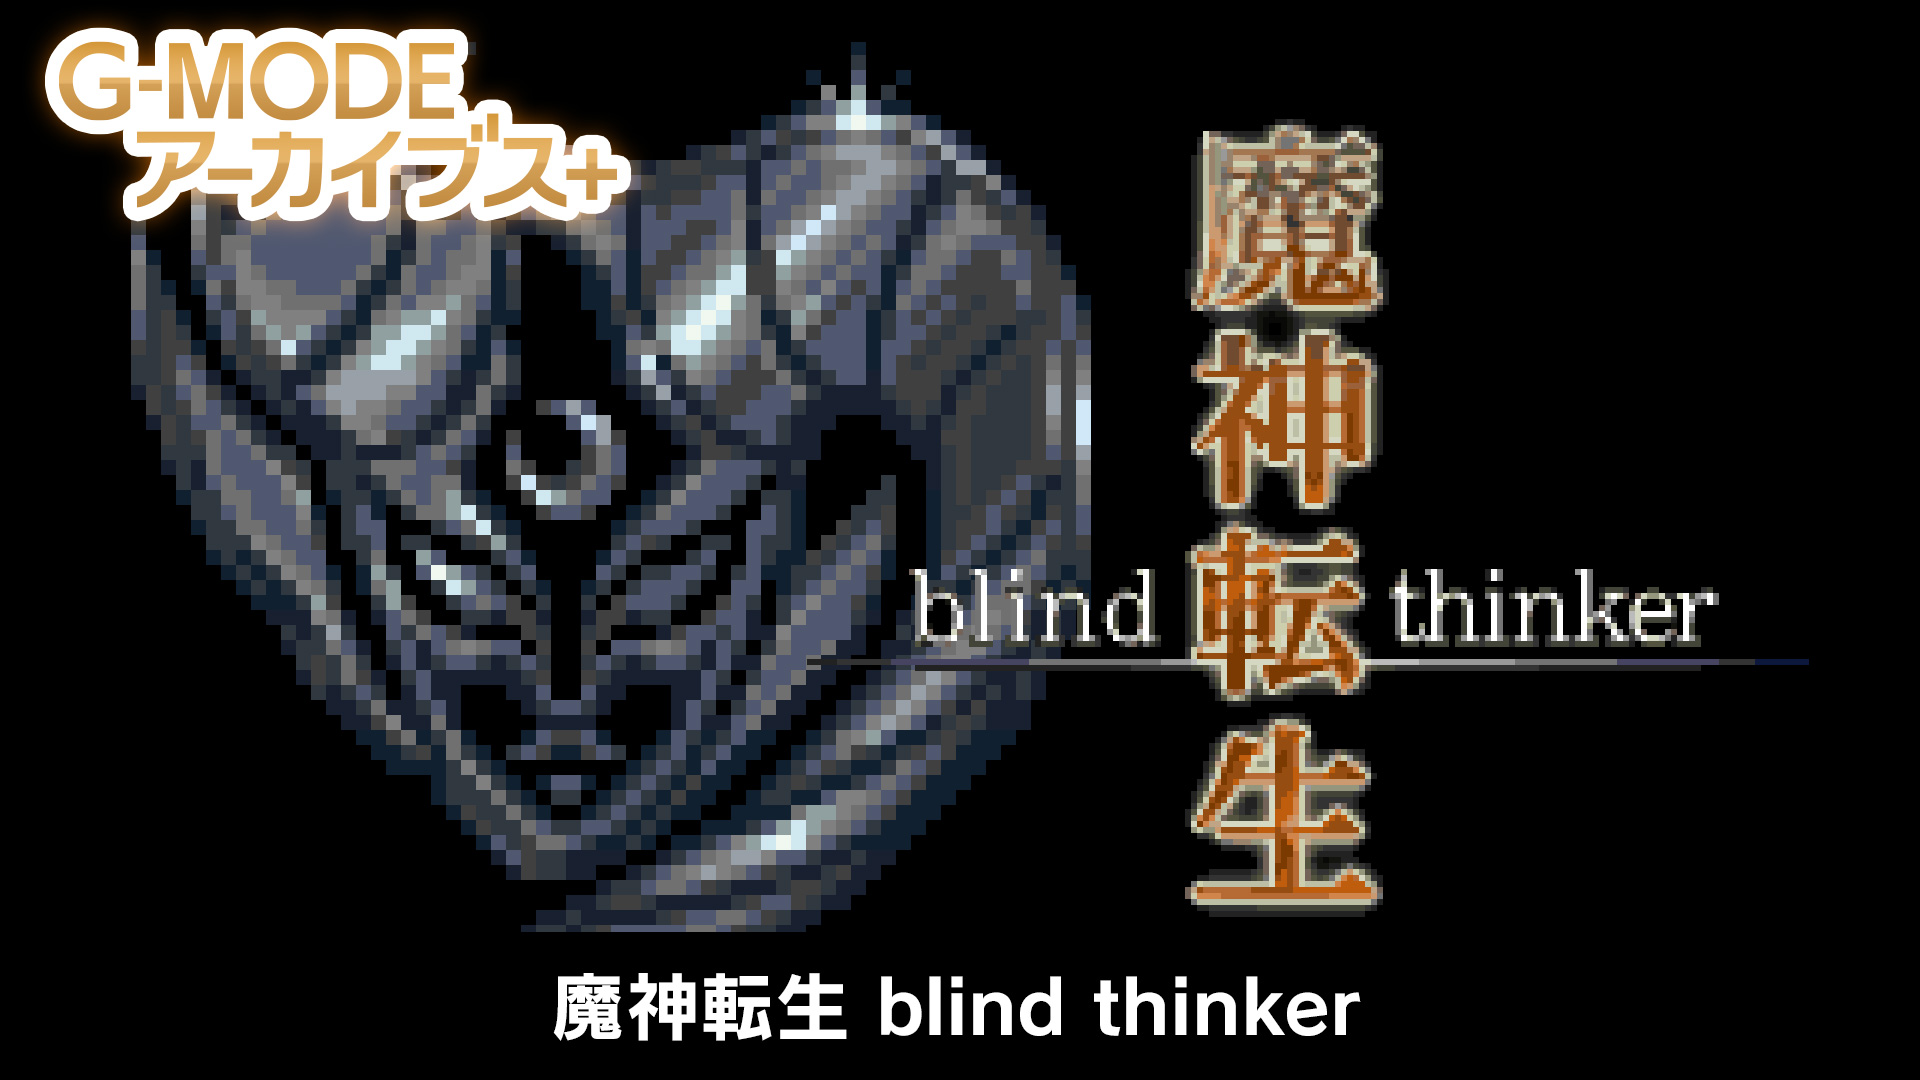 魔神転生 blind thinker - G-MODEアーカイブス